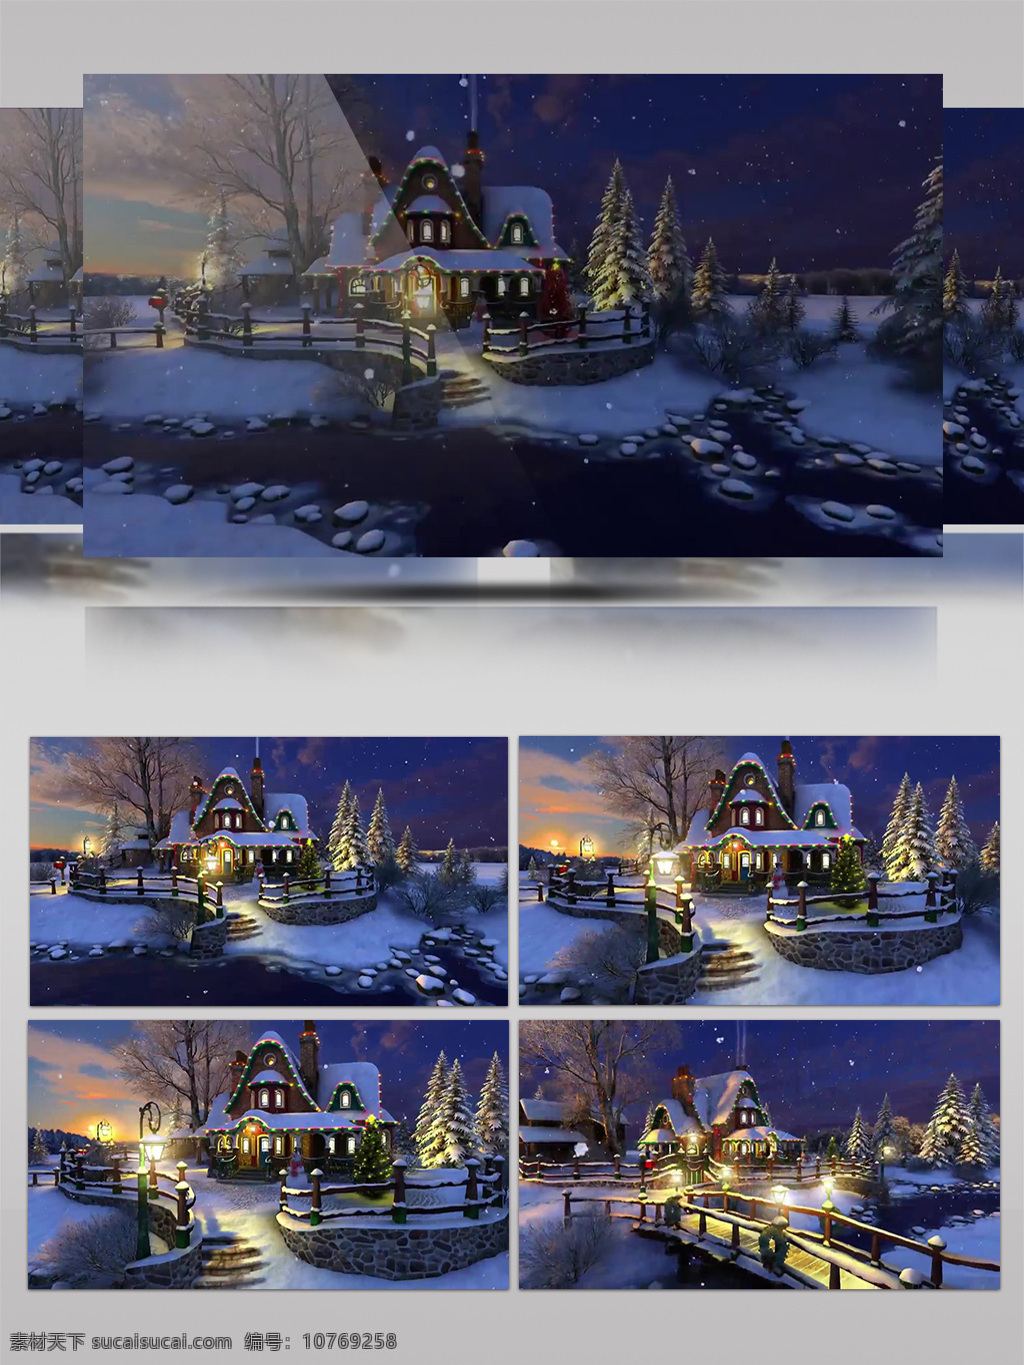 ym 圣诞 小屋 雪景 含音乐 卡通城市 卡通城镇 卡通冬天 圣诞节 童话世界 童话小镇 温馨 新年春节 主题城市